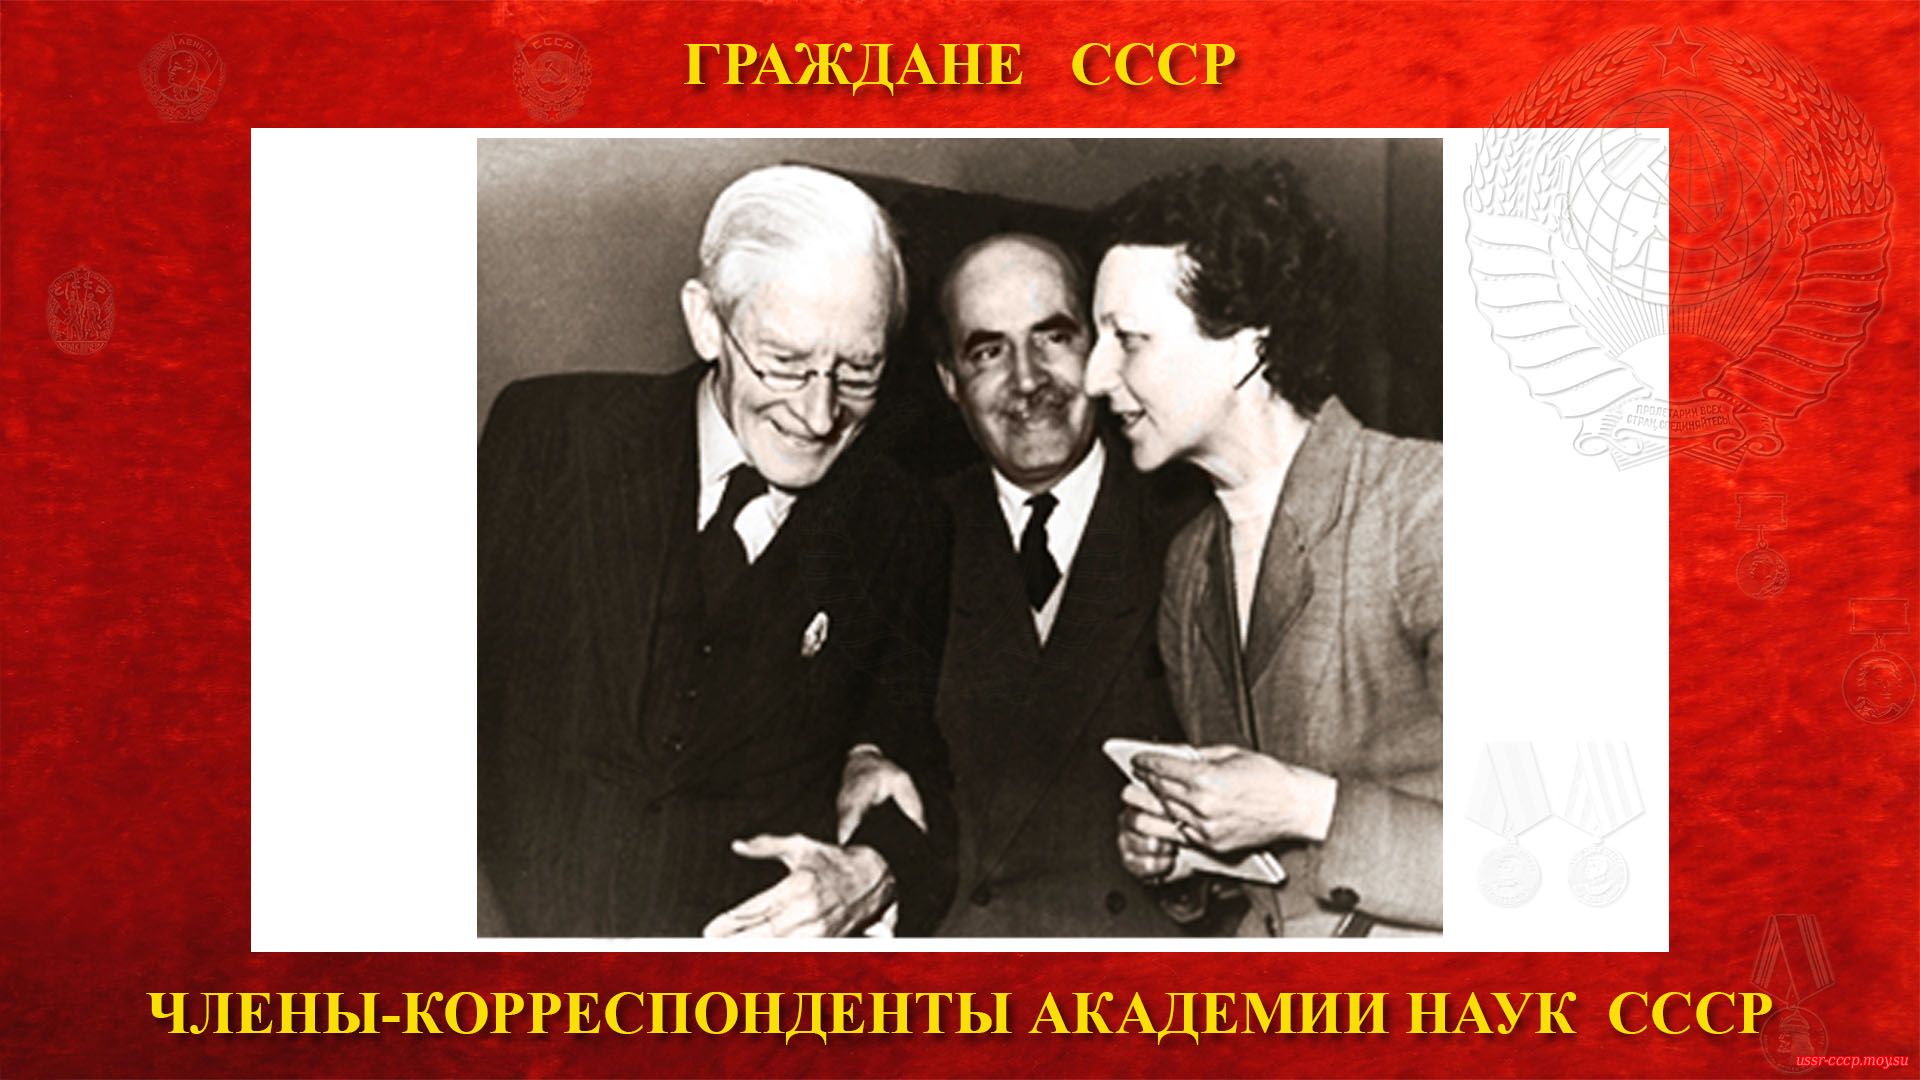 Коштоянц Хачатур Седракович с лордом Эдрианом, президентом королевского общества (МГУ, примерно середина 1950-х годов).